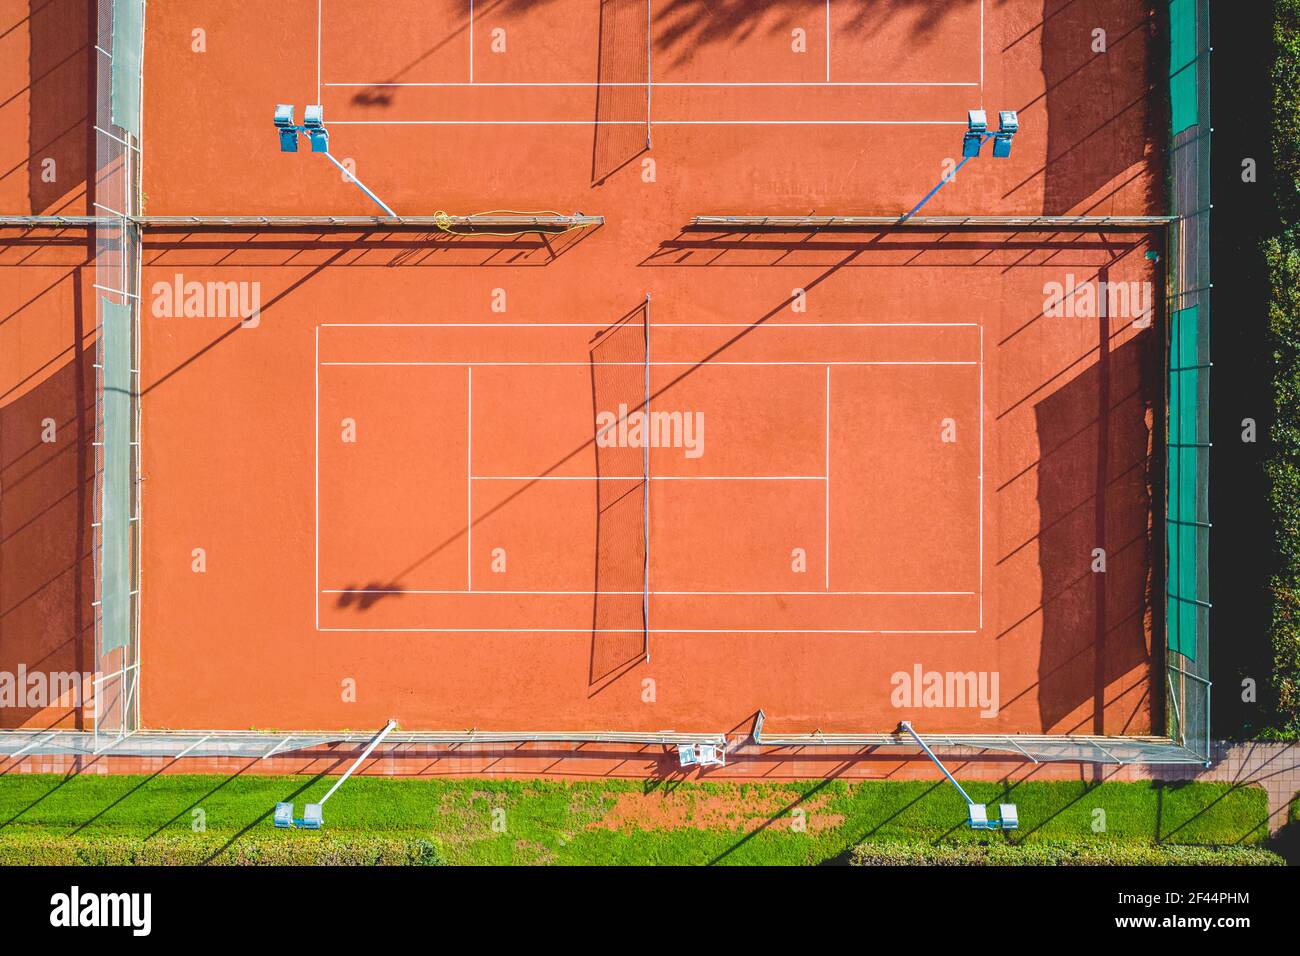 Vue aérienne du court de tennis en argile rouge Banque D'Images